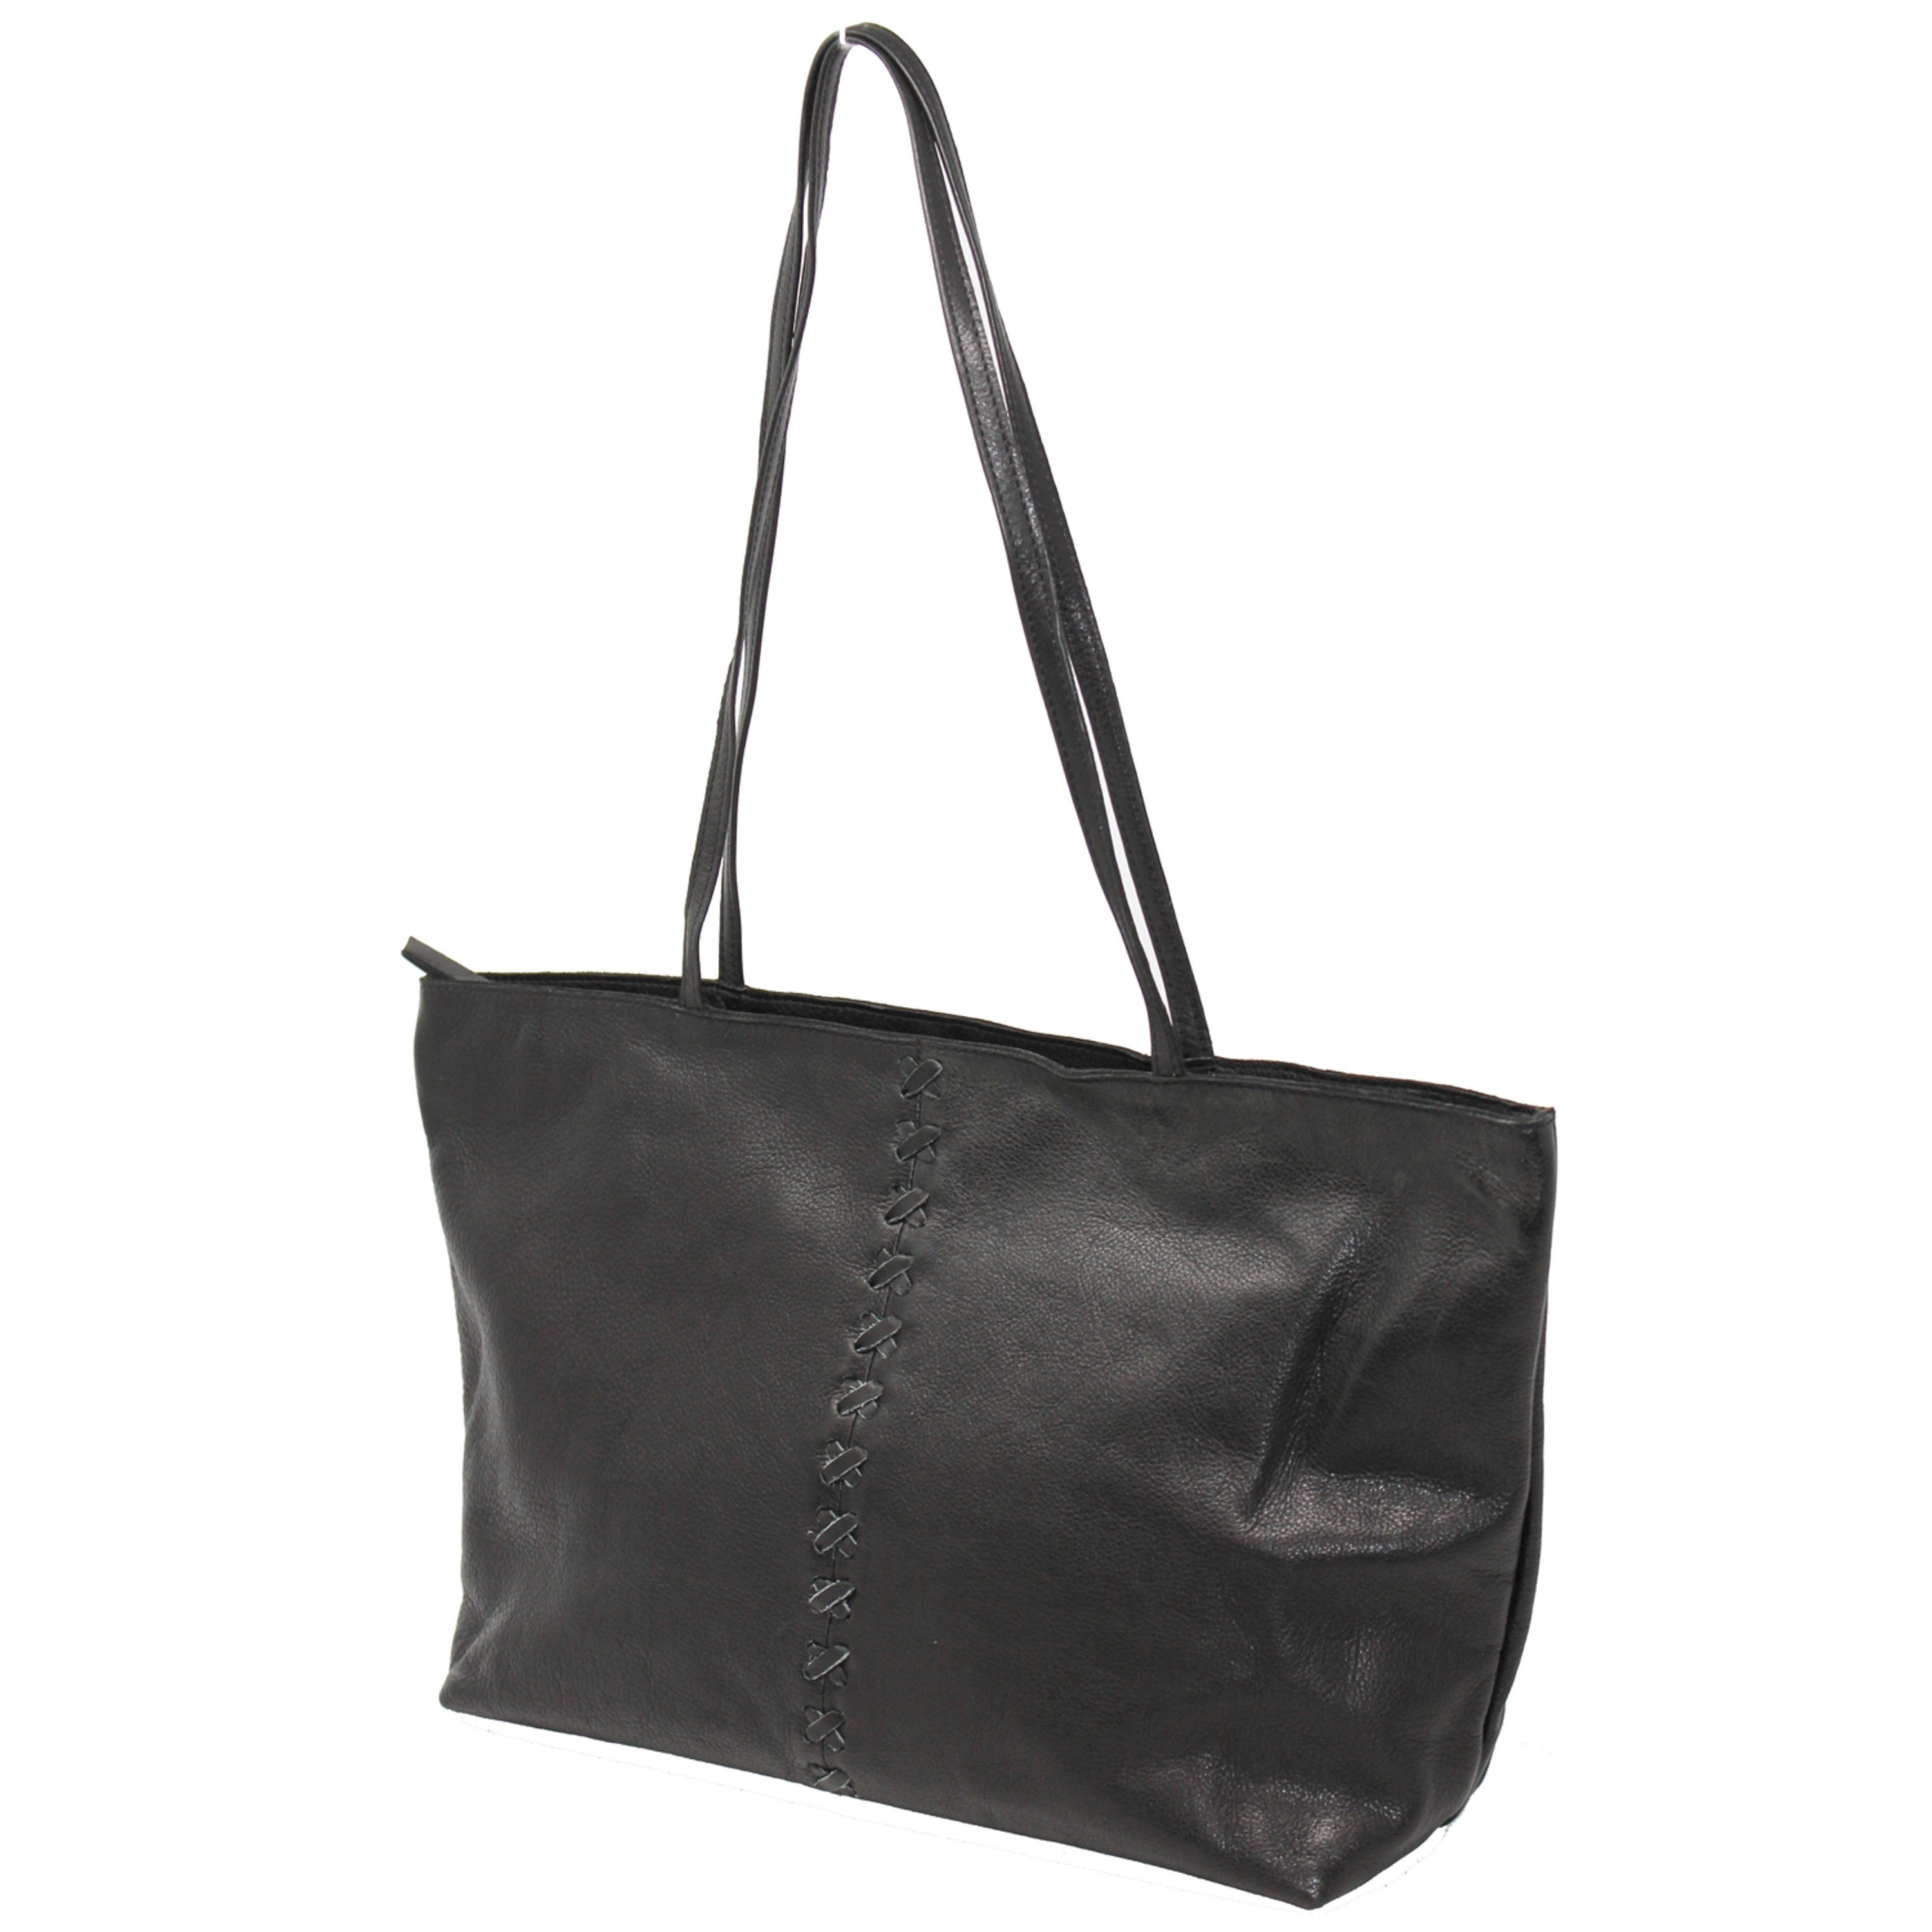 Mar Leather Tote/Shoulder Bag Black